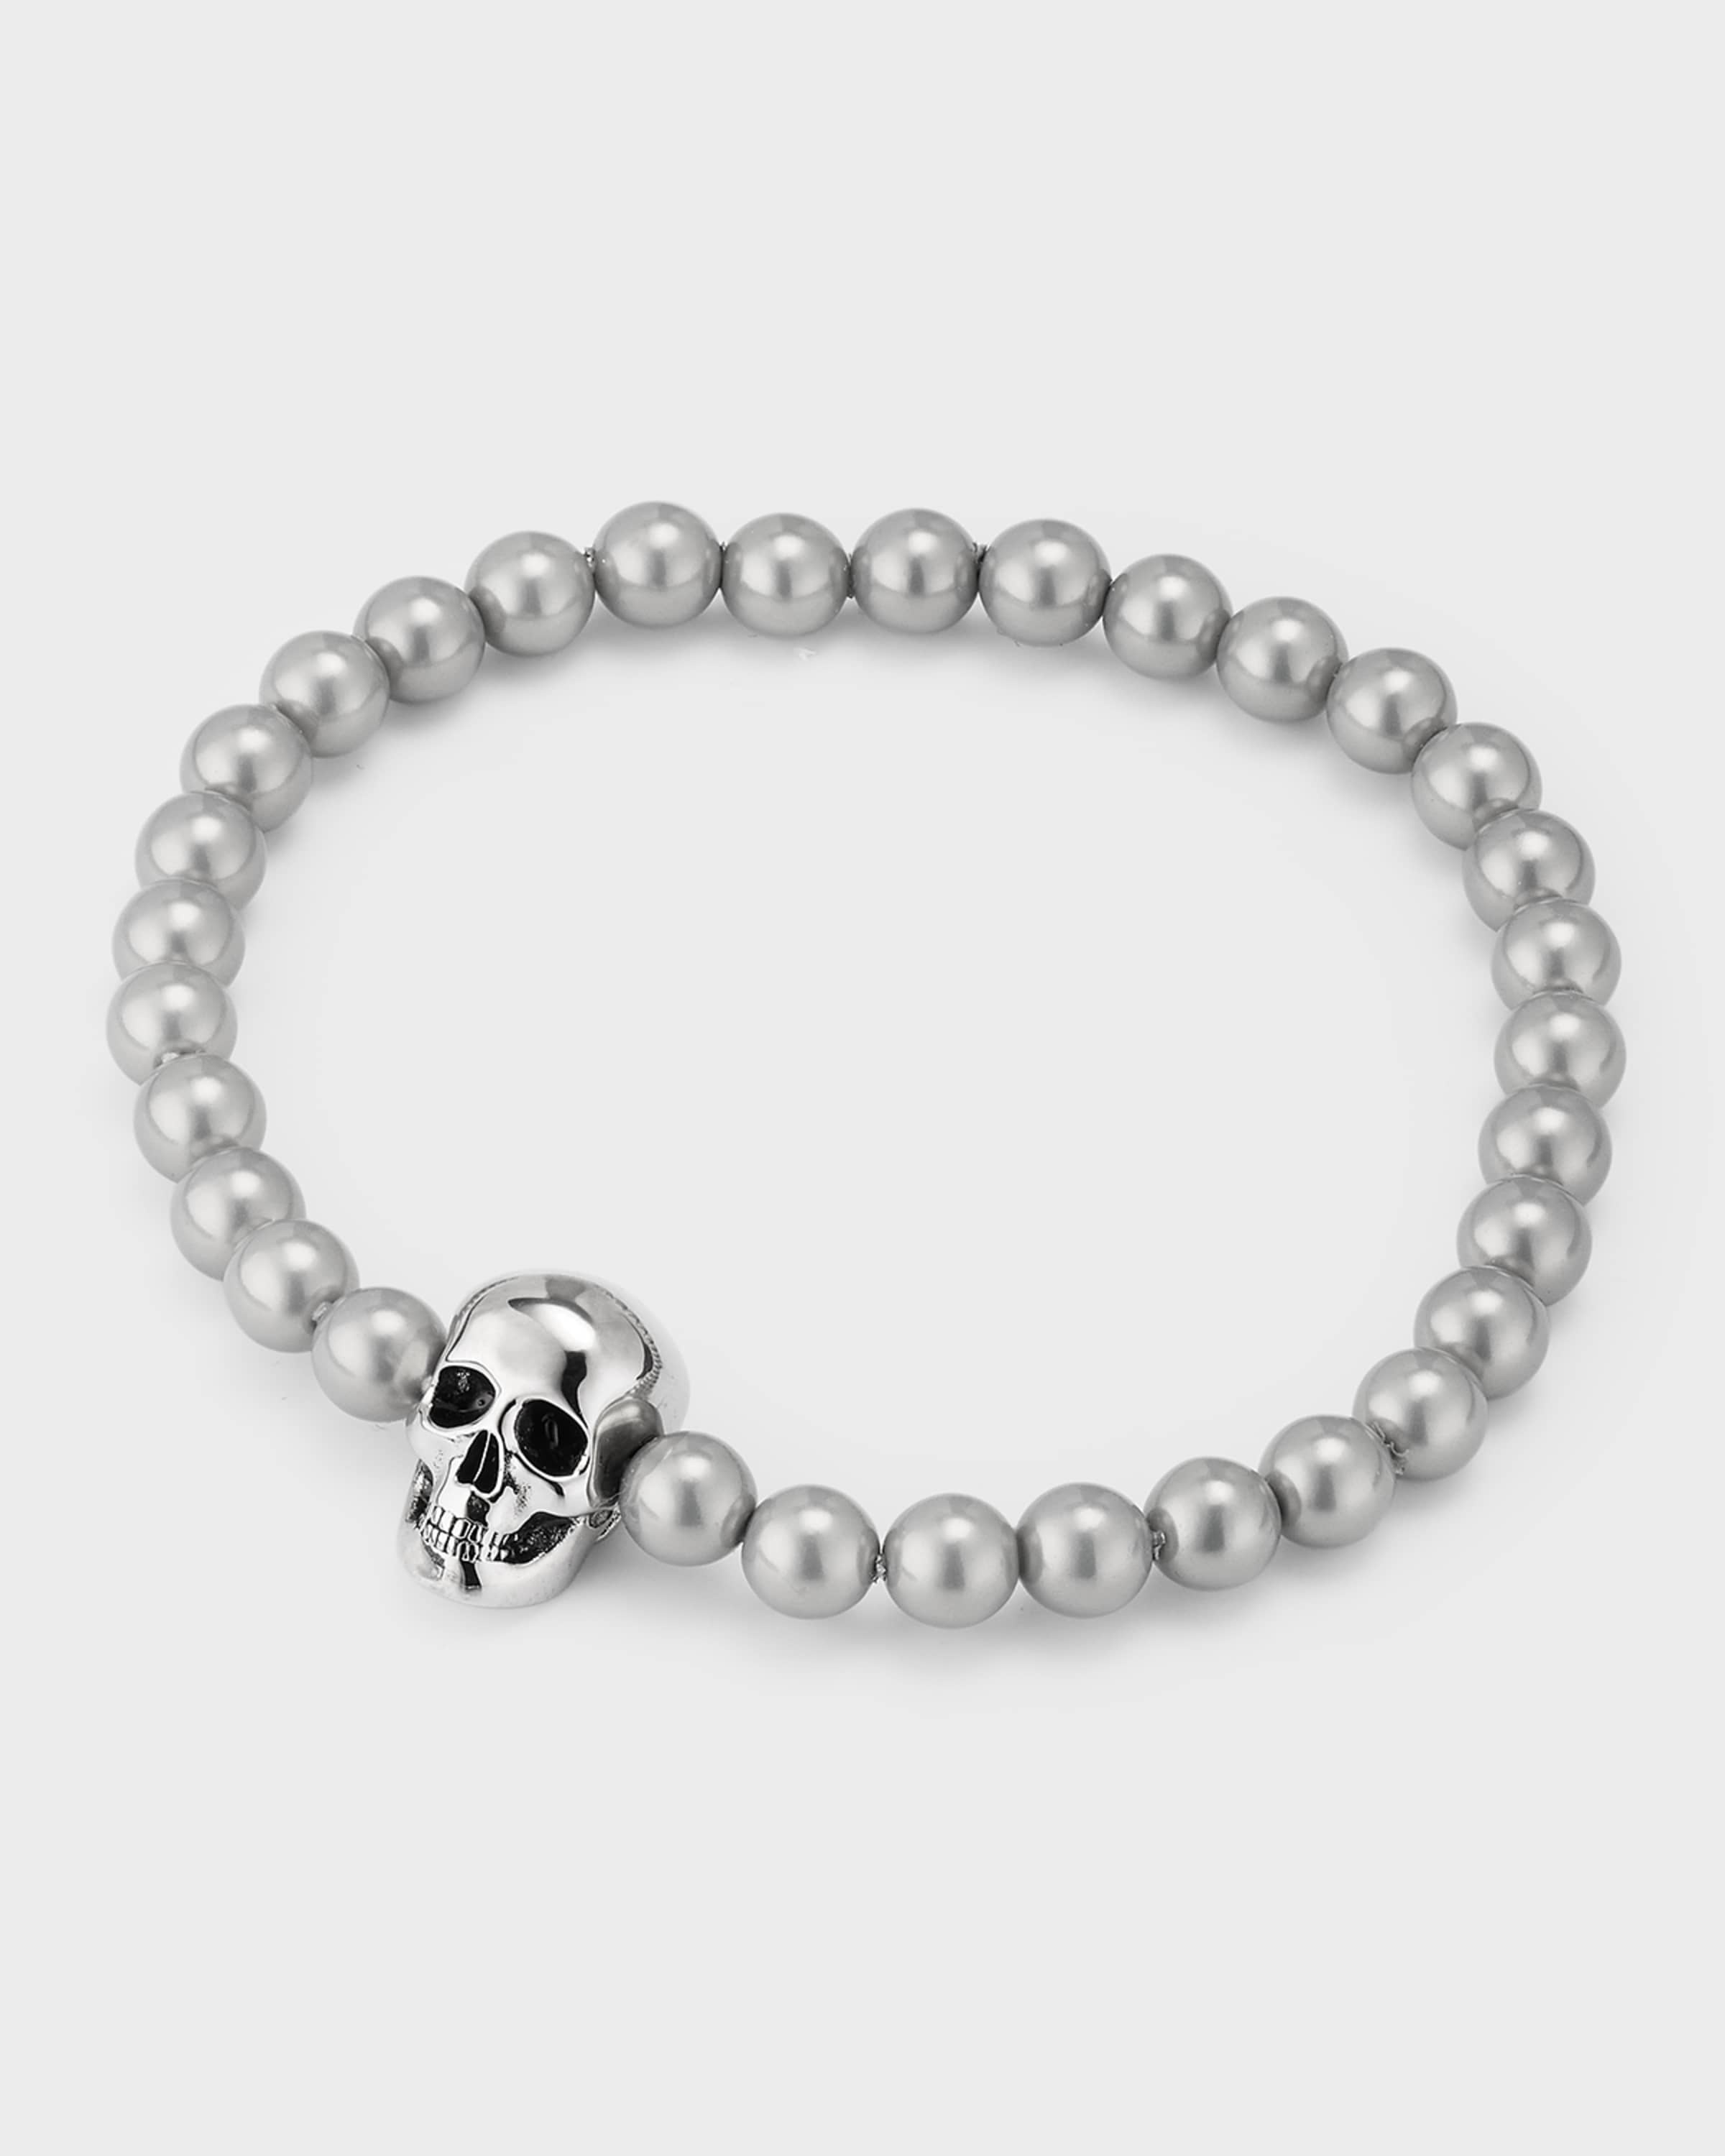 Men's Skull Bead Bracelet - 3